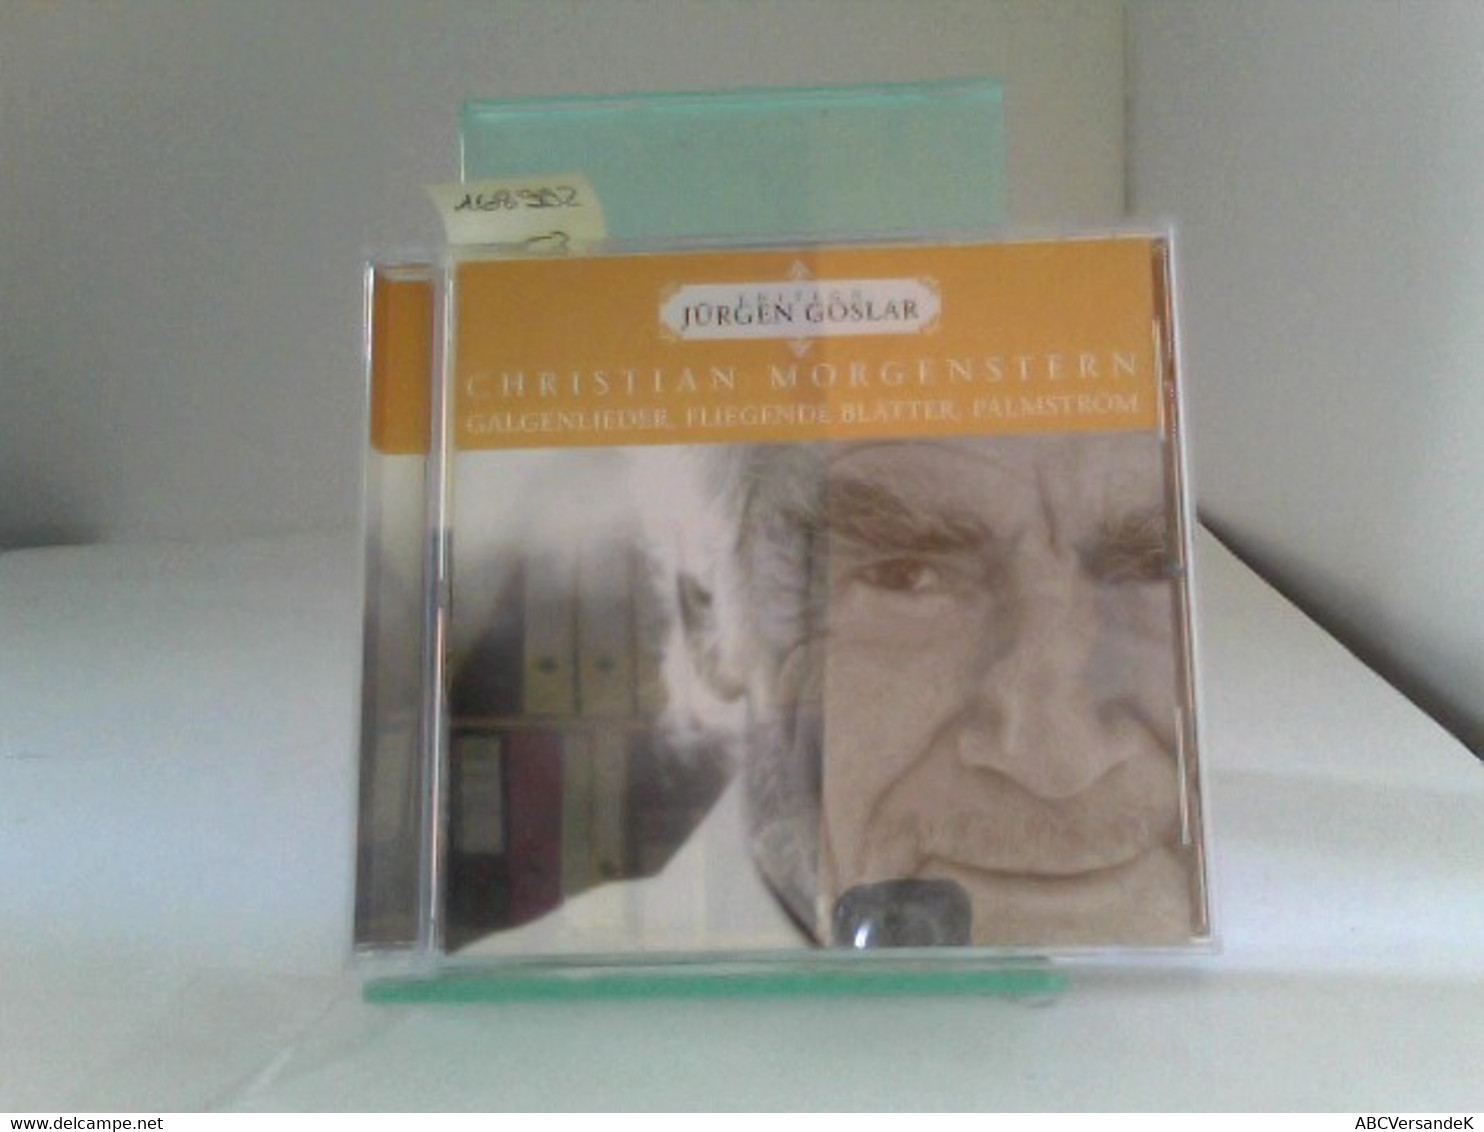 Christian Morgenstern: Galgenlieder, Fliegende Blätter, Palmström - CDs